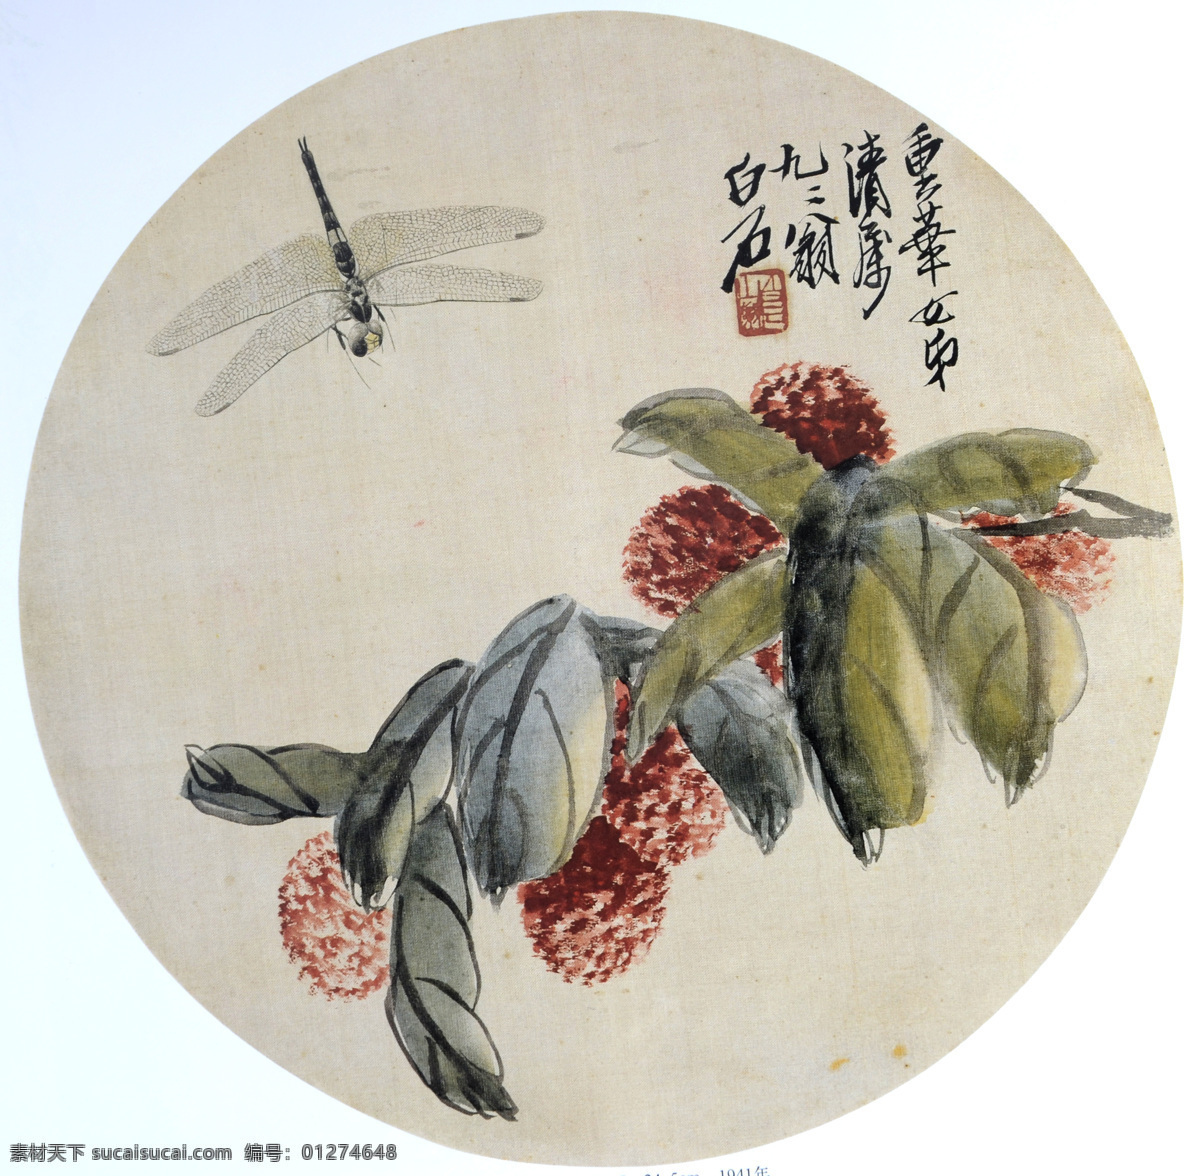 齐白石 国画 桑葚 蜻蜓 九十二岁白石 绘画书法 文化艺术